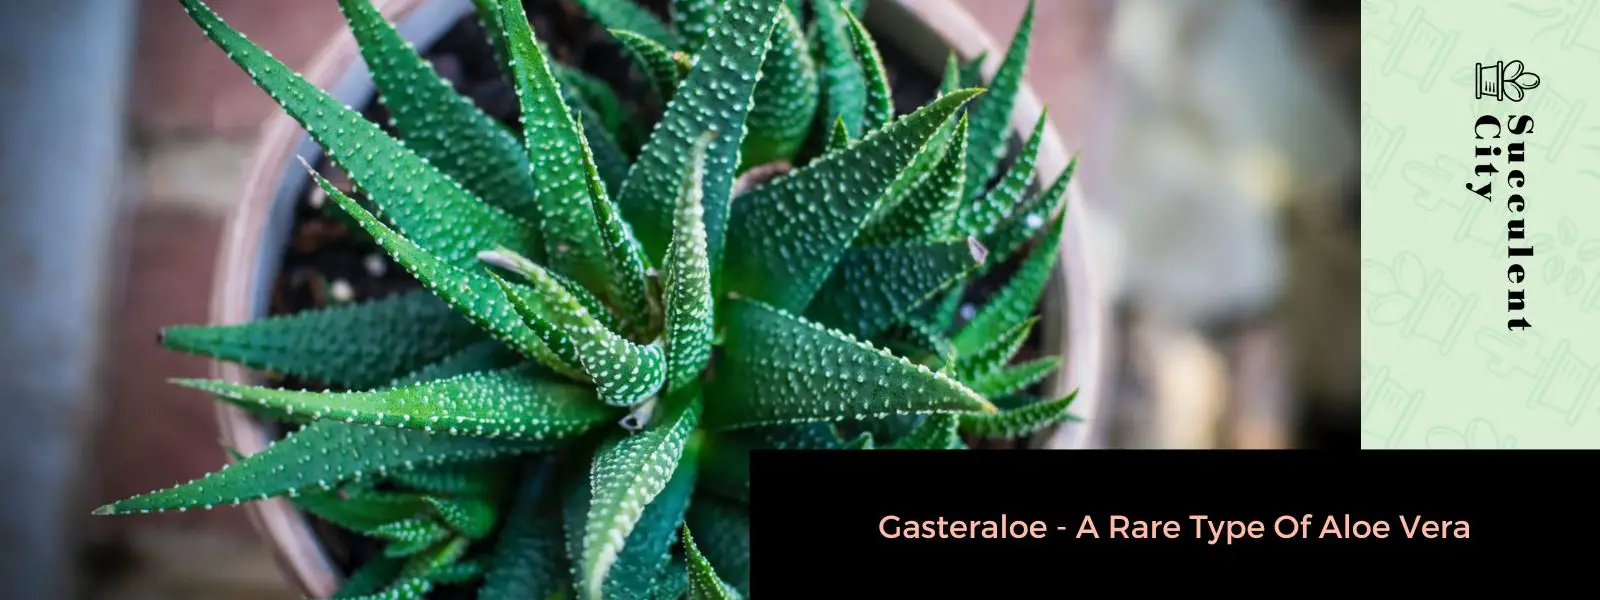 Gasteraloe: un tipo raro de aloe vera